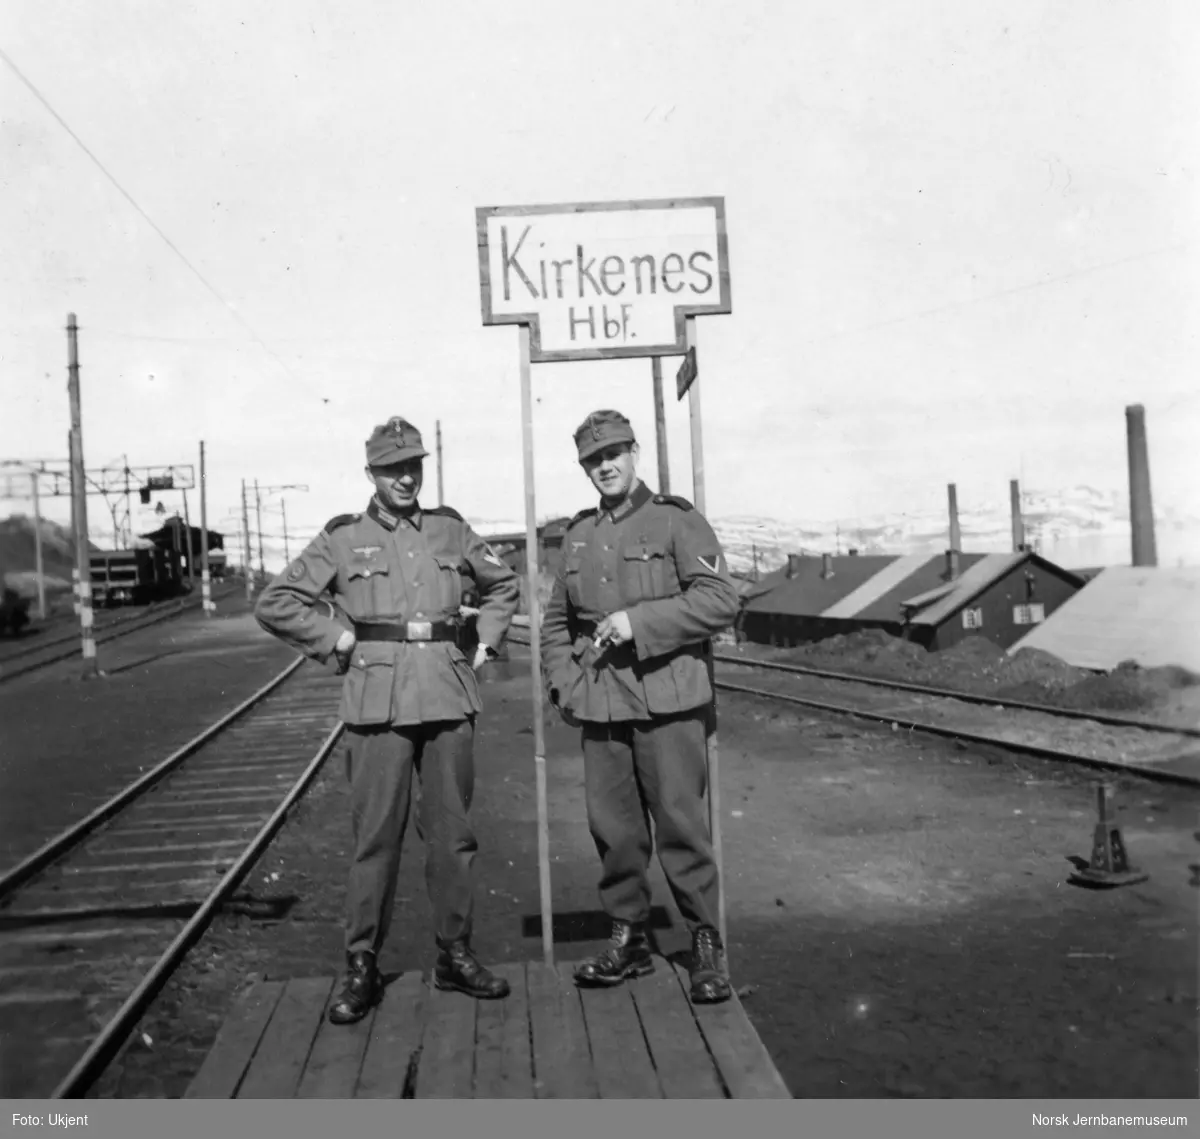 Tysk skilt oppsatt på Kirkenes stasjon - "Kirkenes Hbf." - to militære poserer